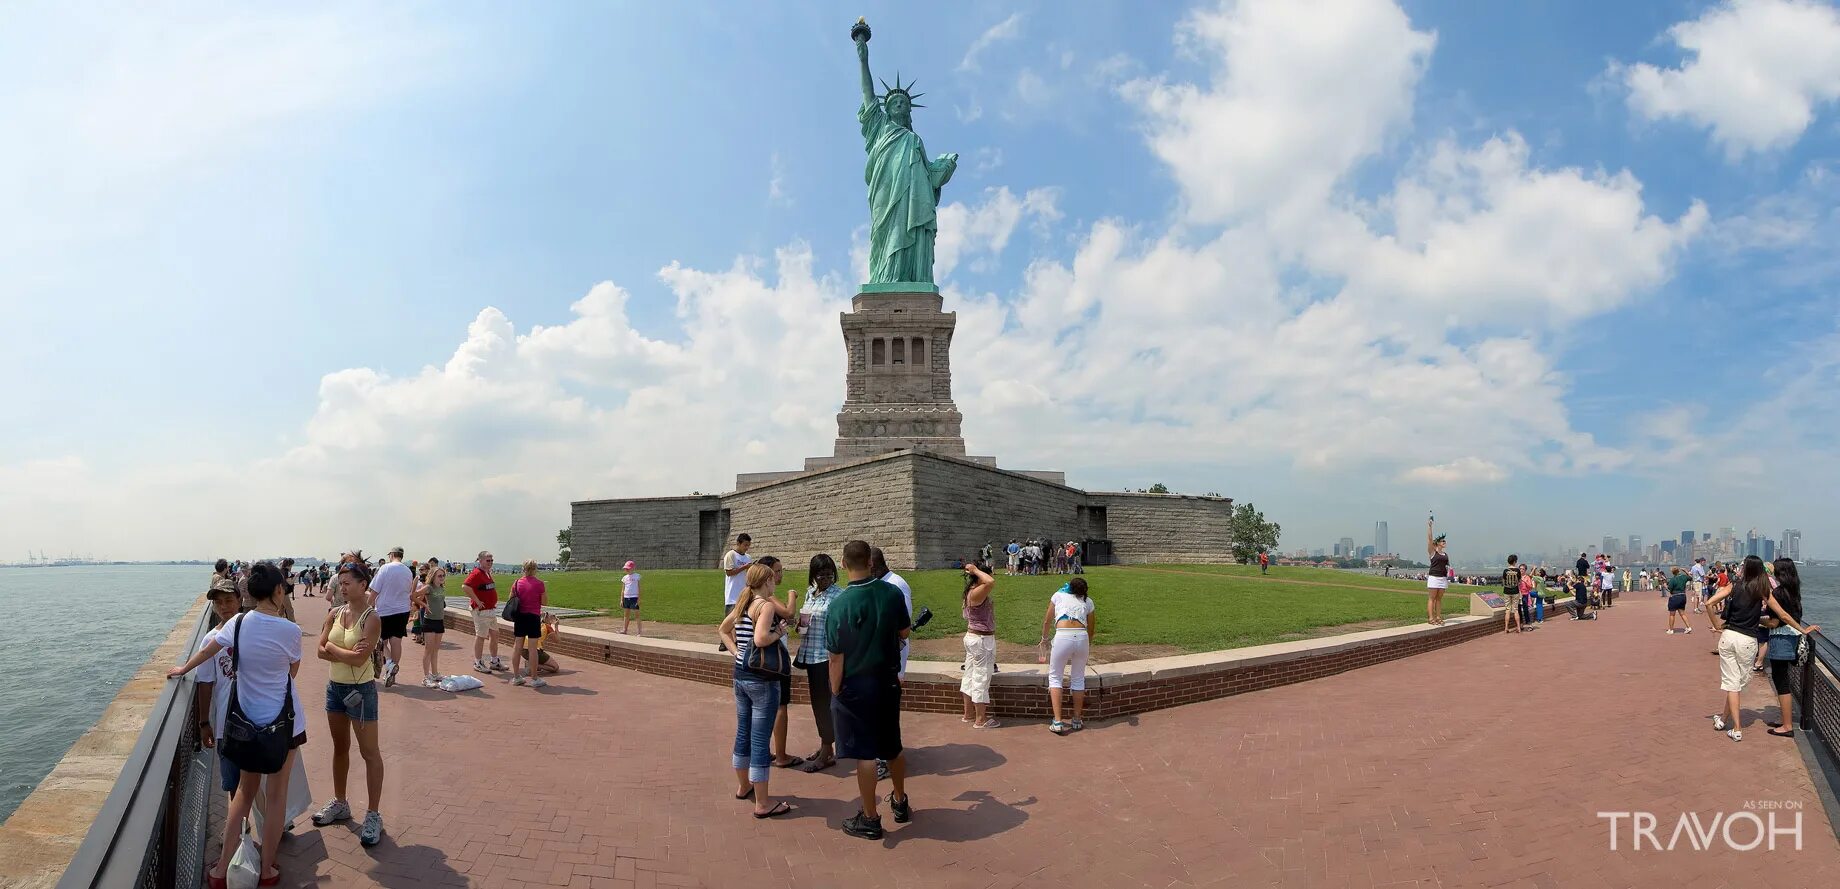 Первая очередь свободы. Статуя свободы Нью-Йорк туристы. Статуя свободы Нью-Йорк смотровая площадка. Статуя свободы Нью-Йорк селфи. Статуя свободы и человек.